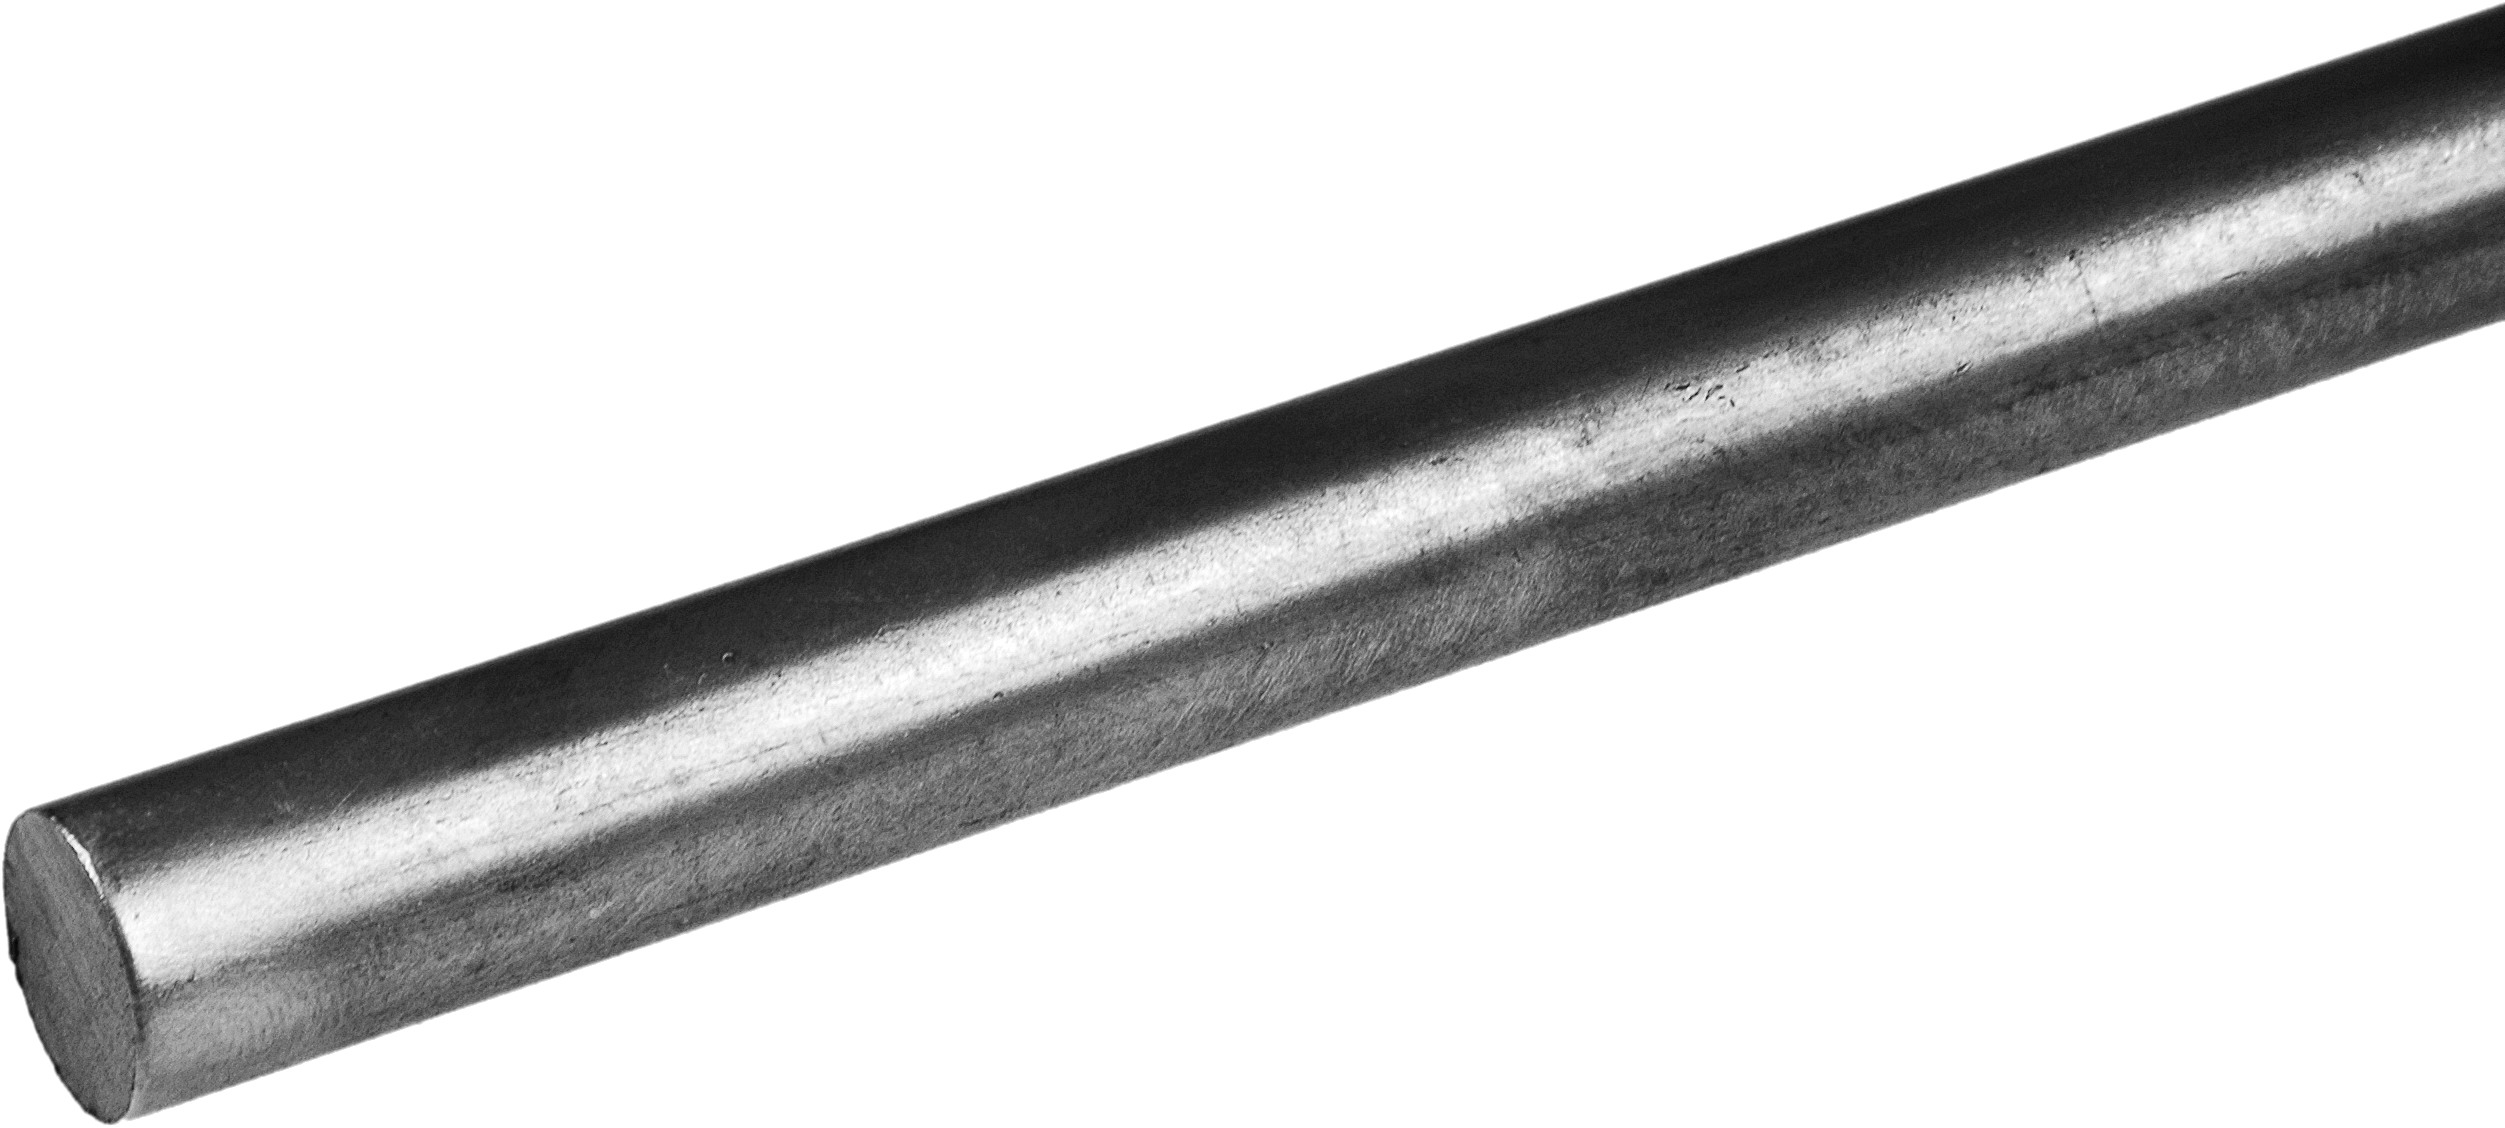 Barre ronde en fer forgé d'une longueur de 3000mm et d'un diamètre de 14mm. A souder.